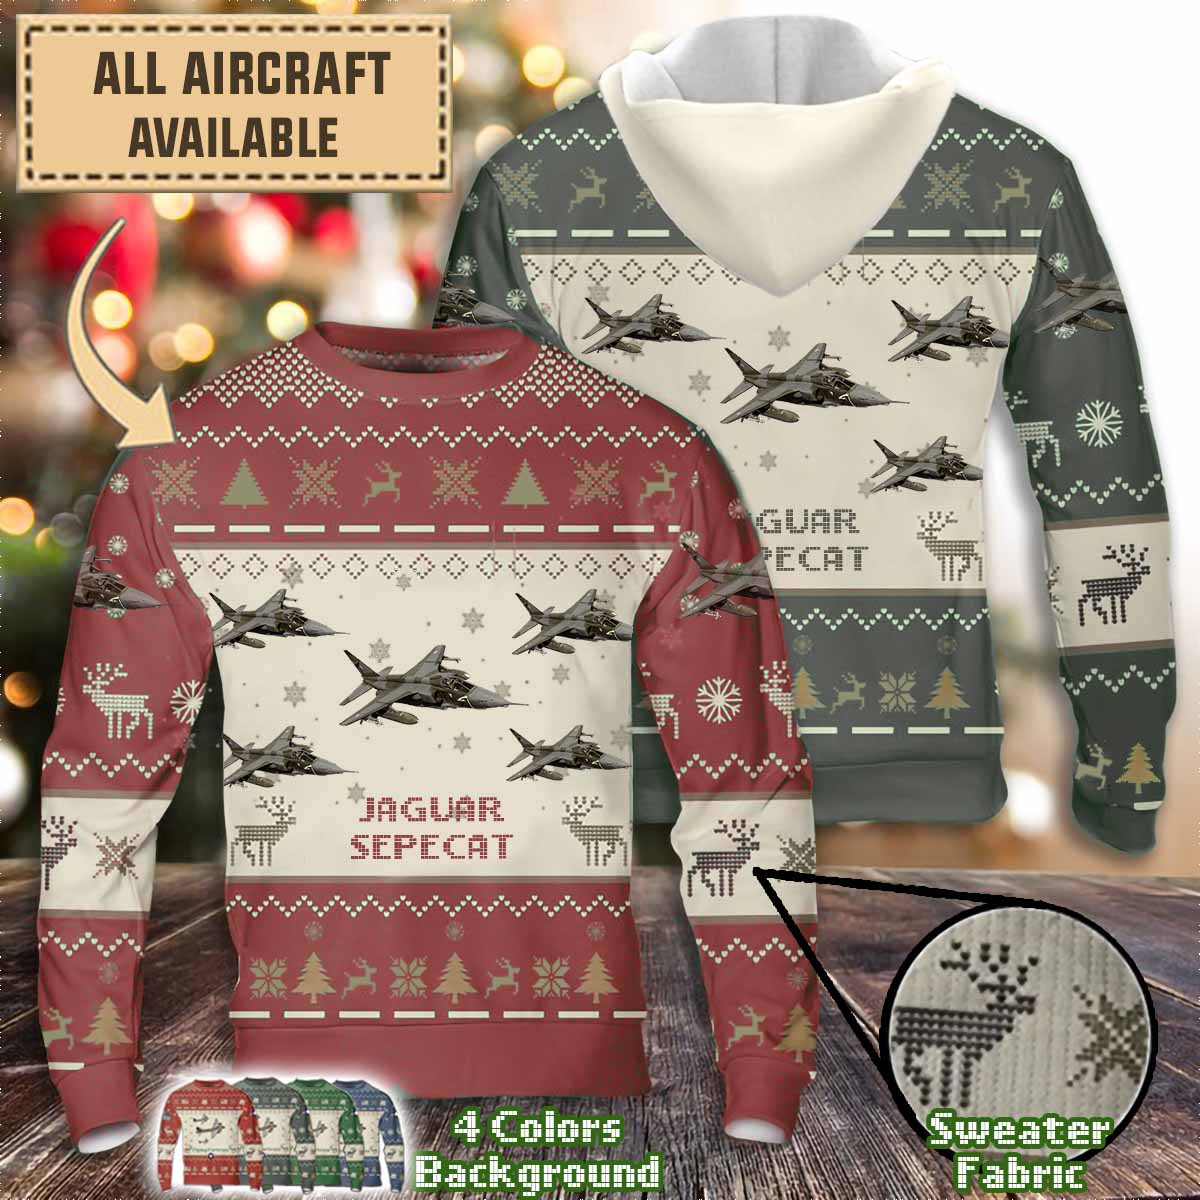 sepecat jaguar aircraft sweater a4sqr